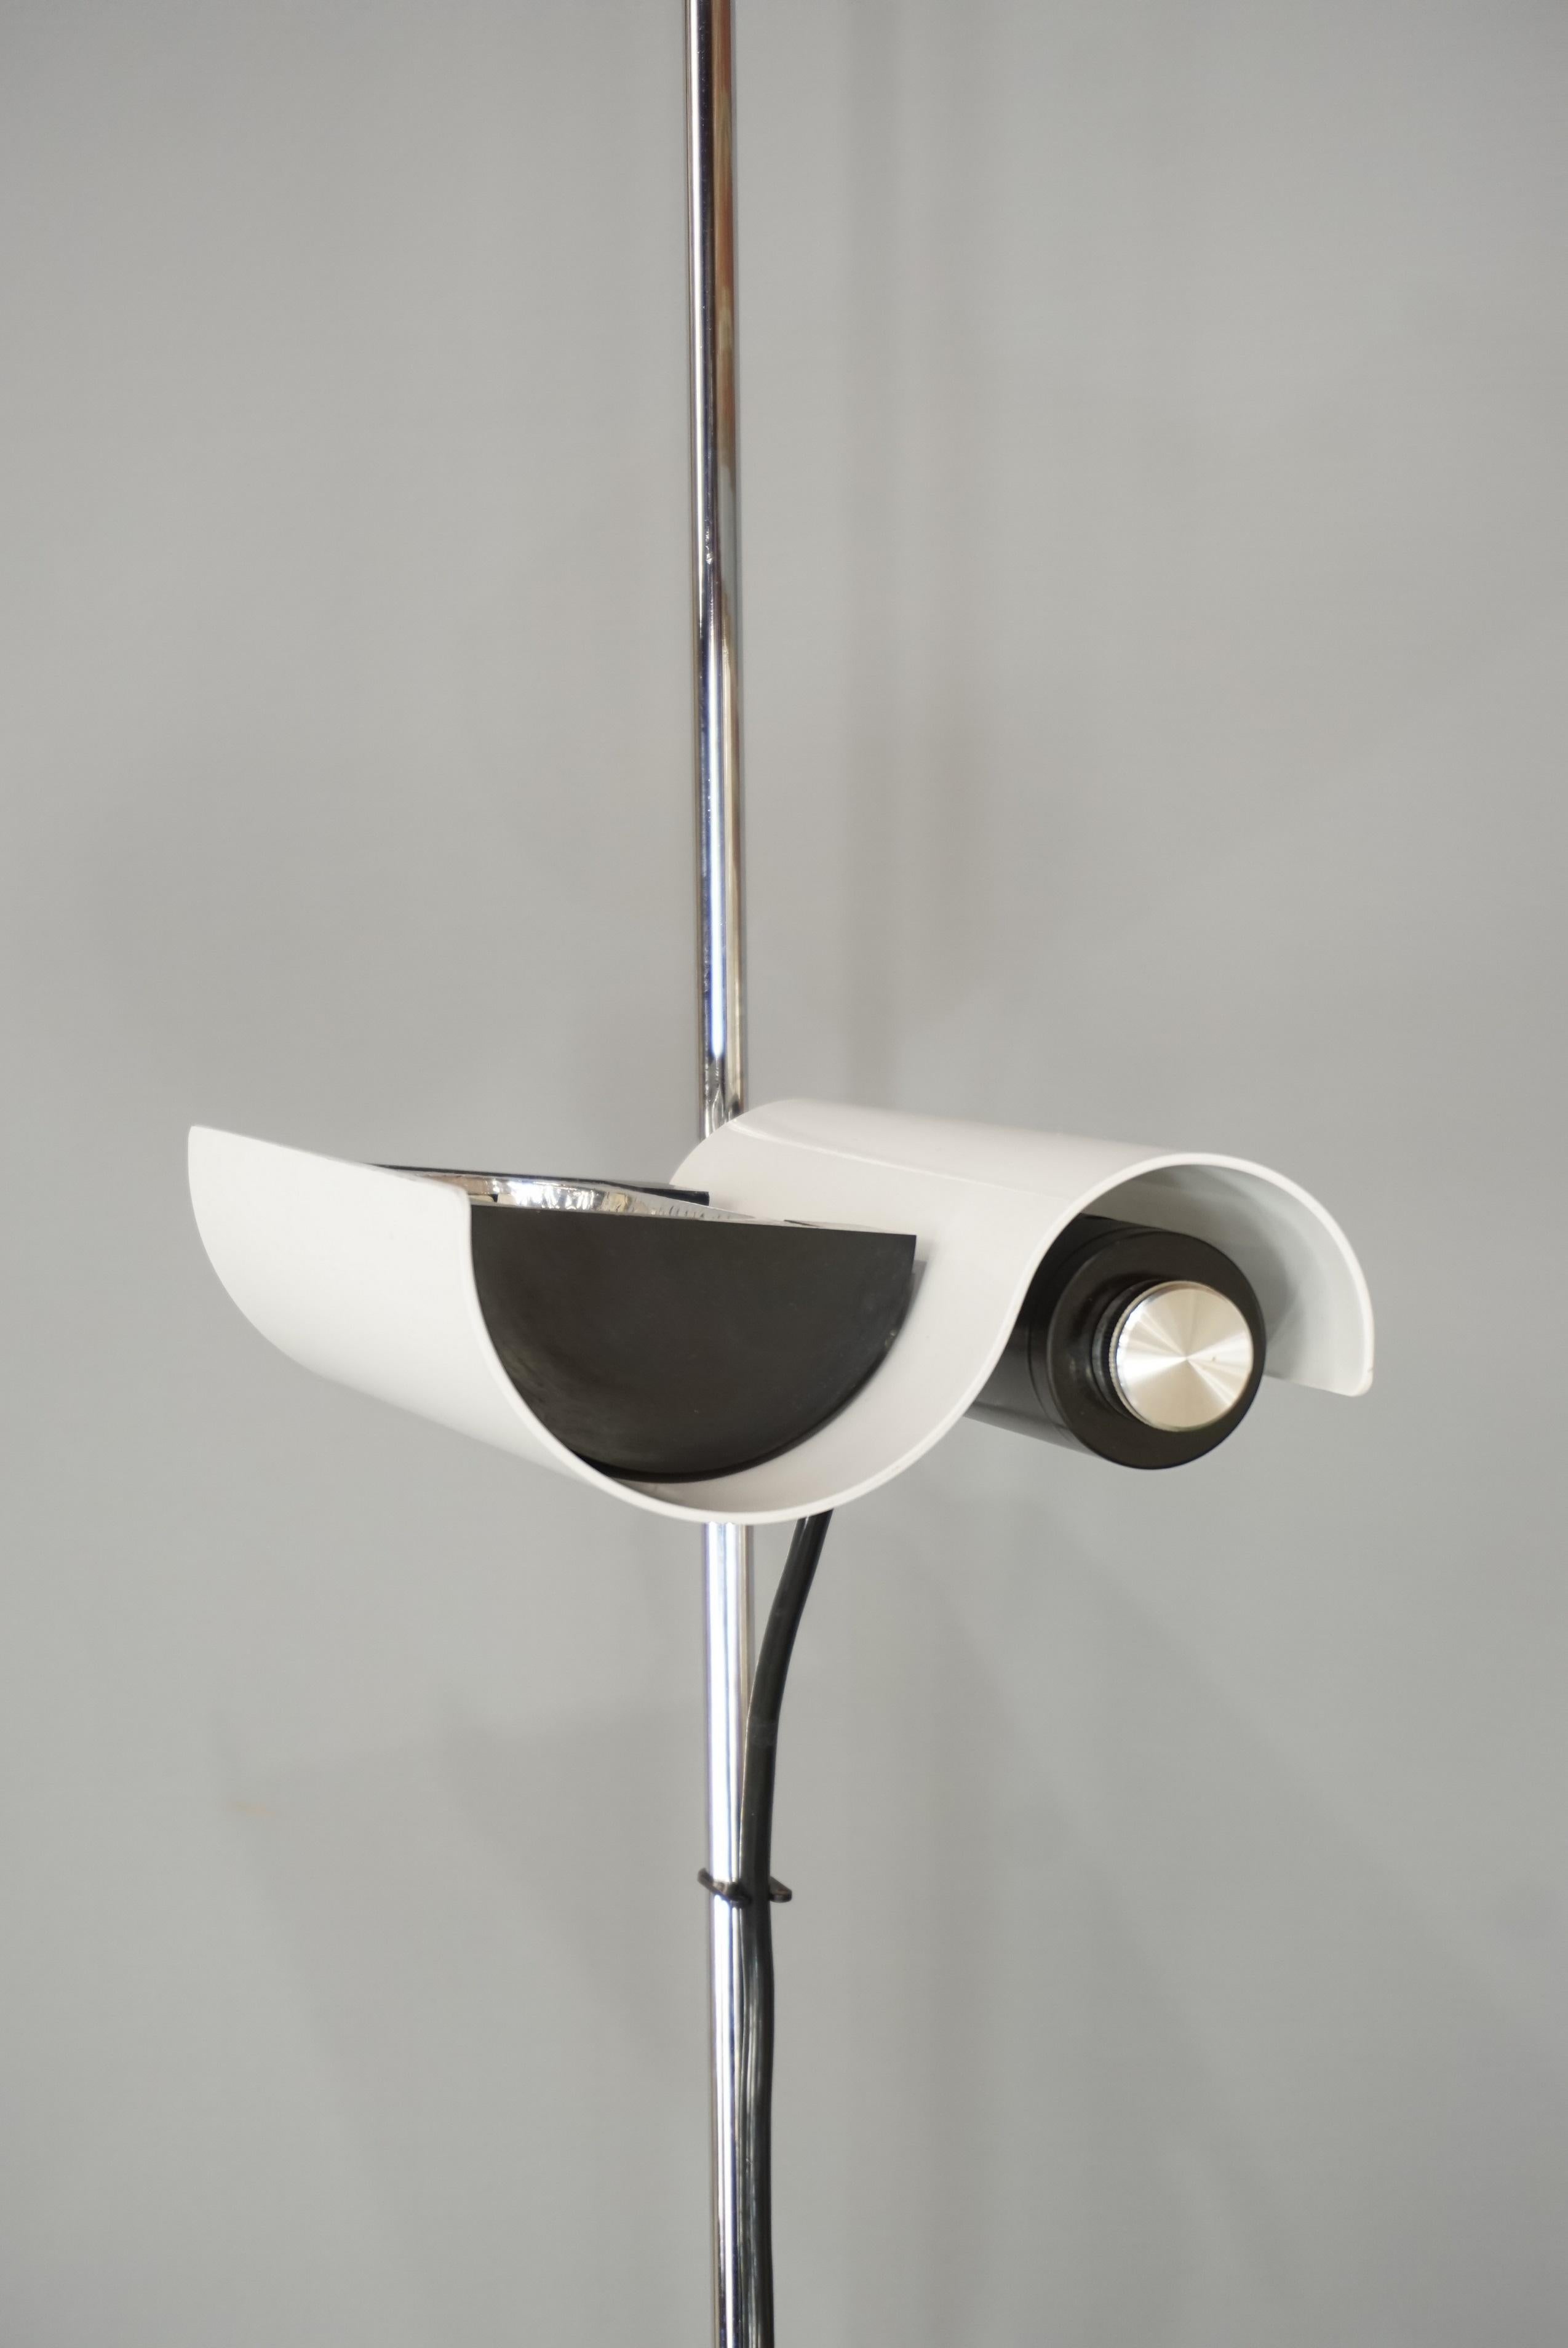 Vico Magistretti's DIM 333 White Floor Lamp Design from the 1970s  6